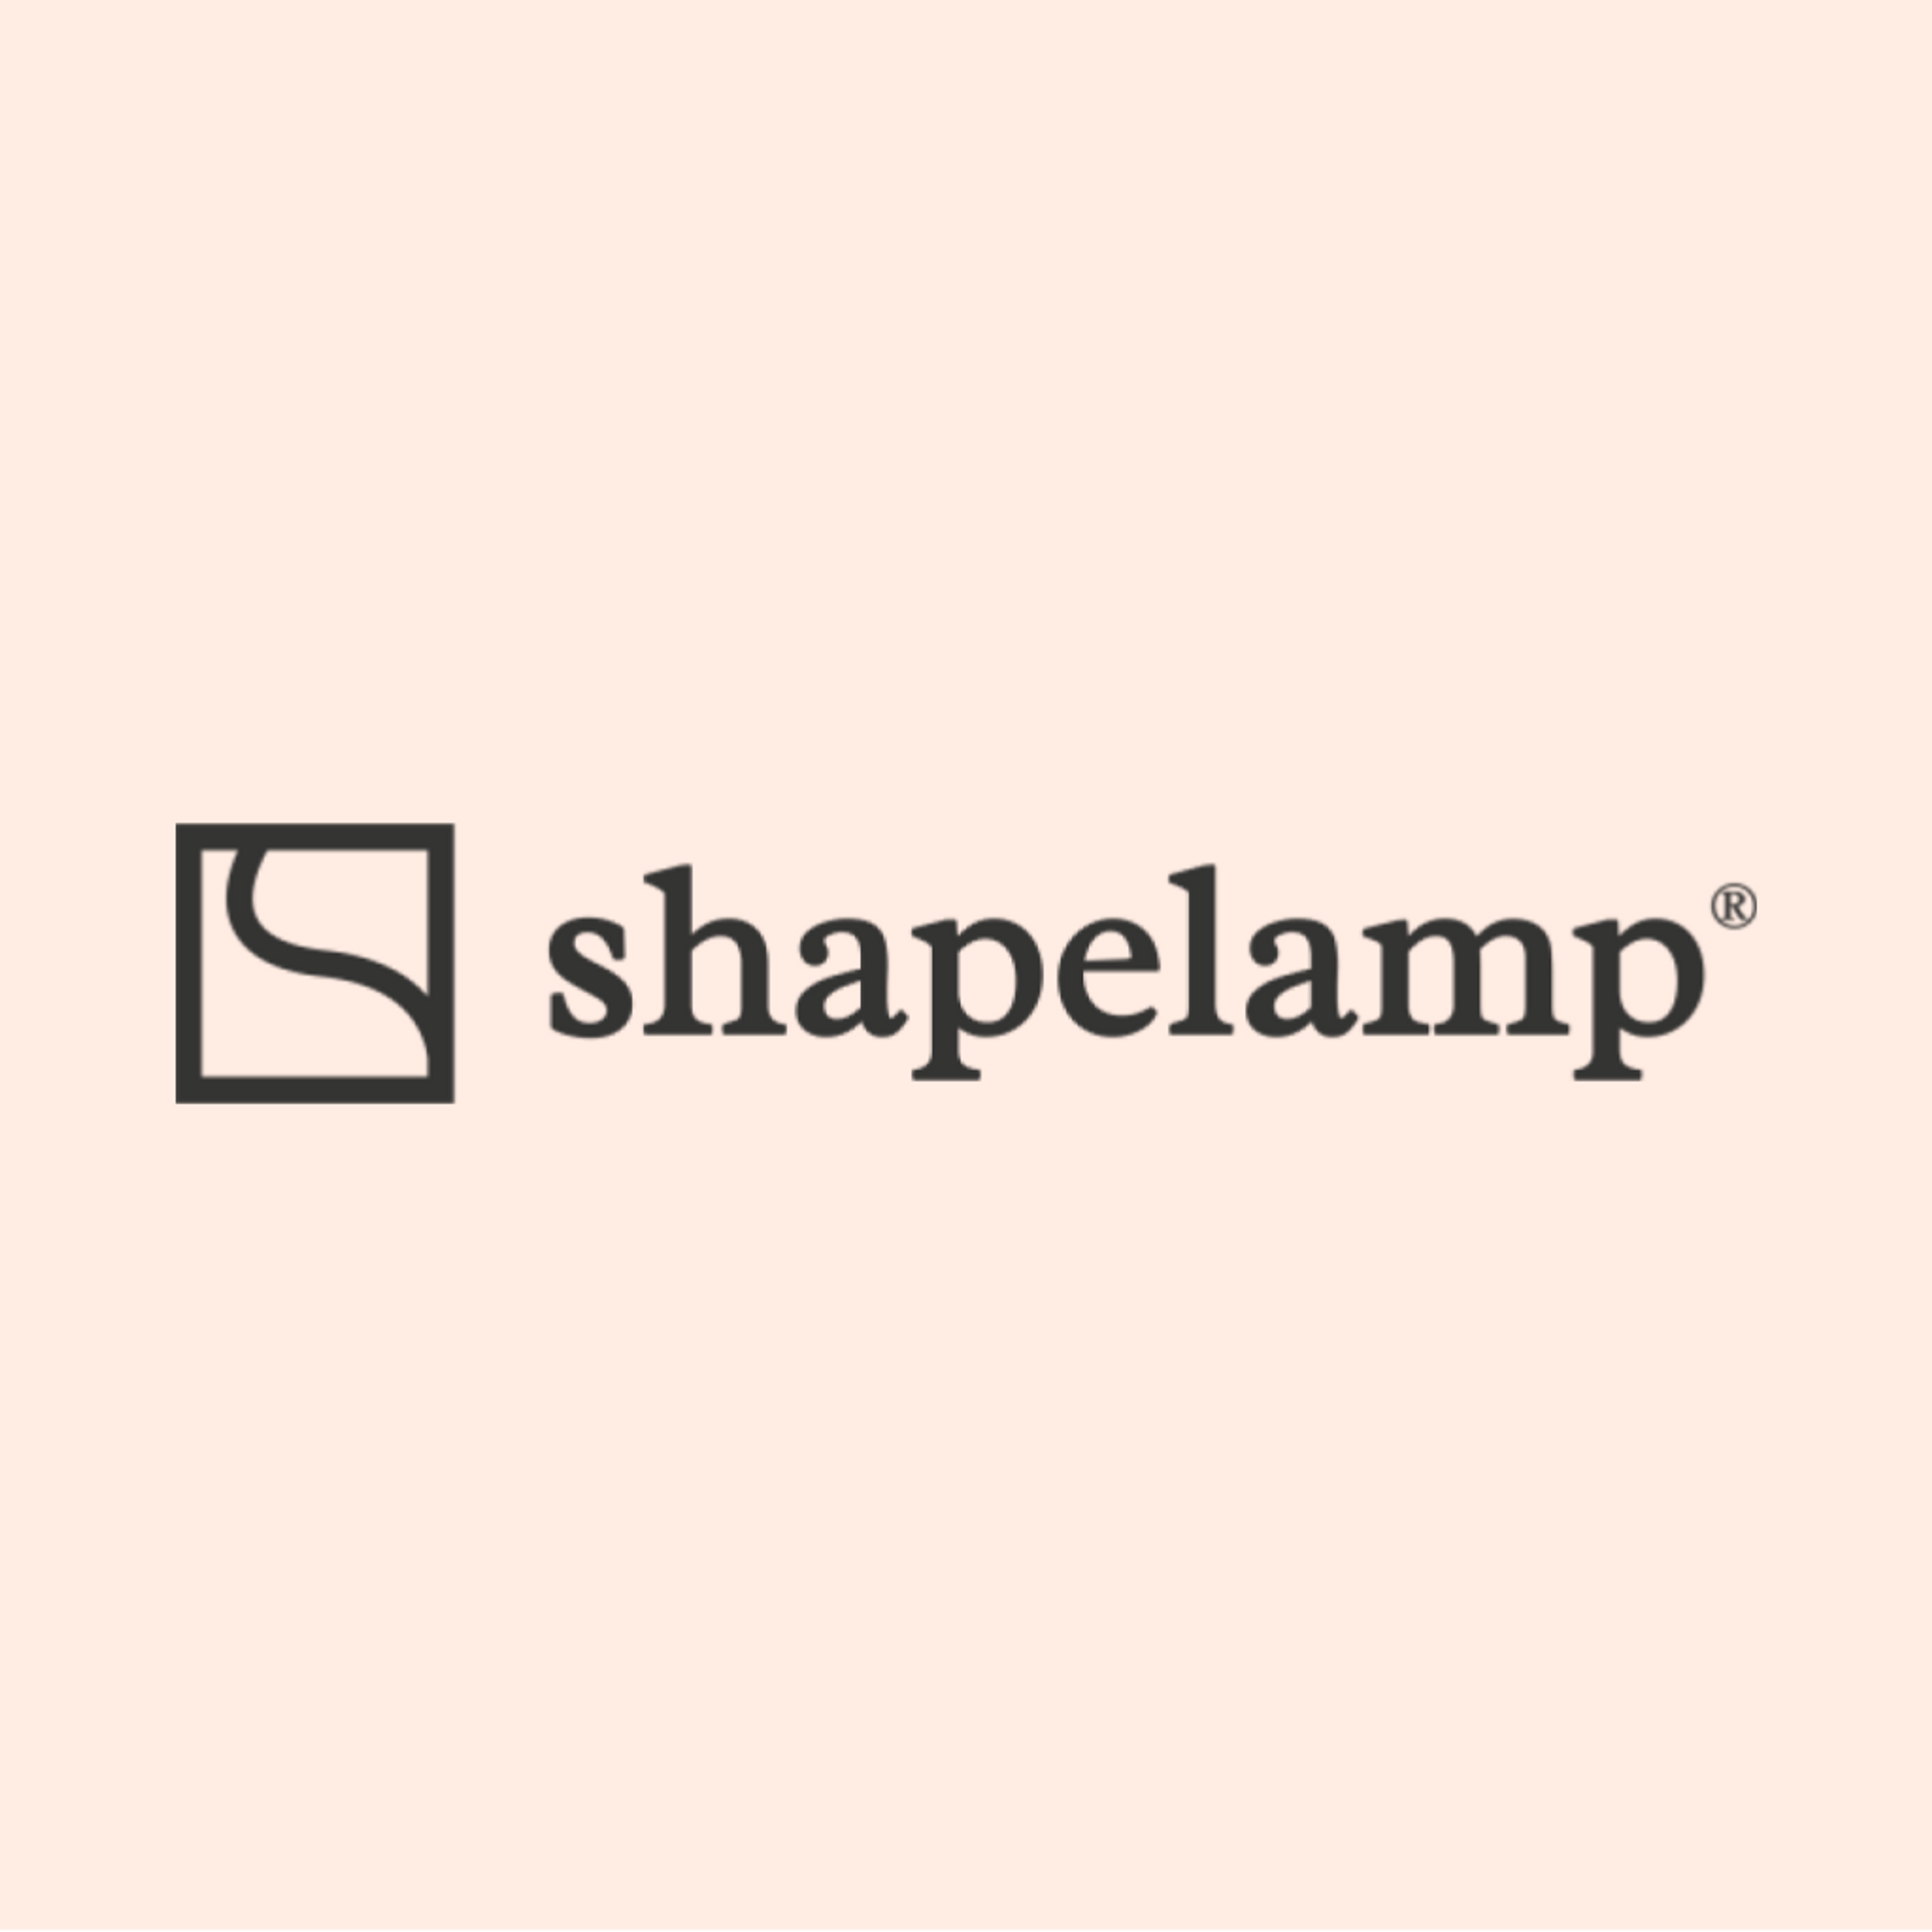 Shapelamp